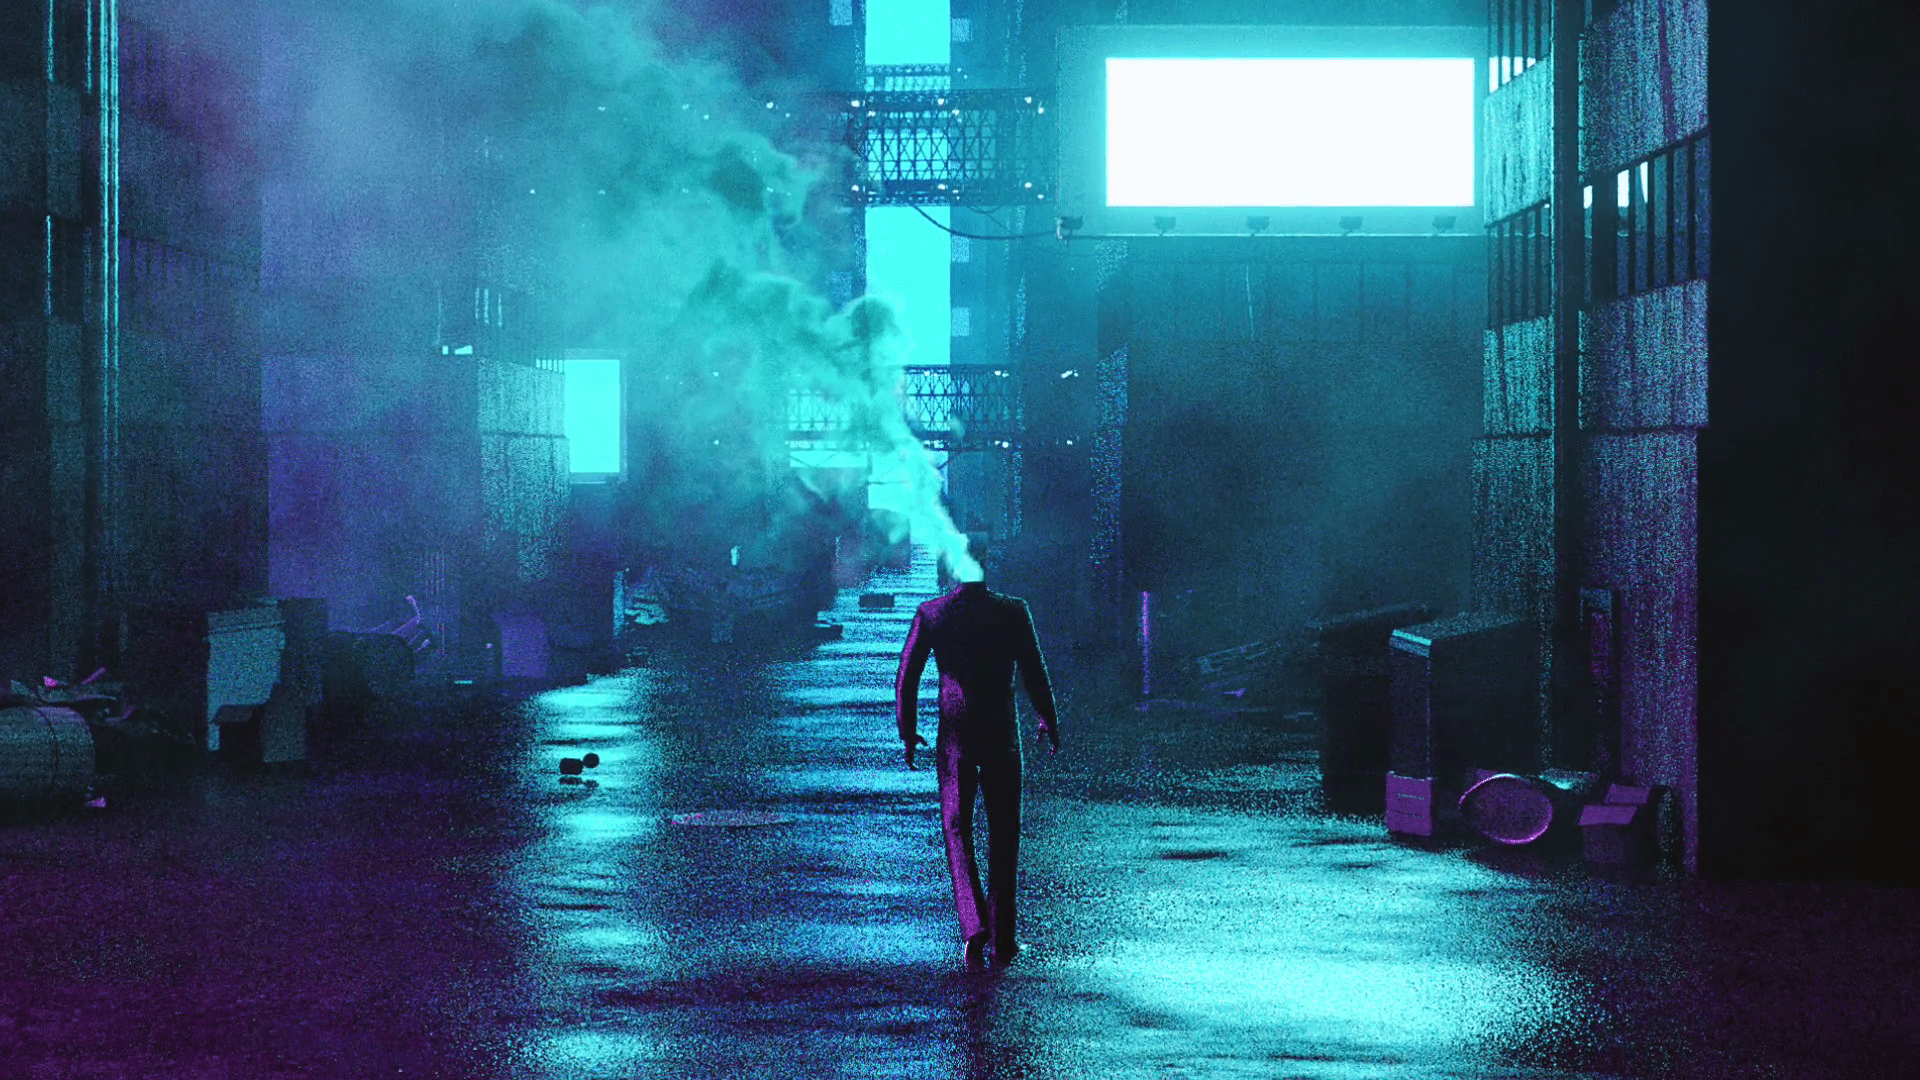 A man in a suit walks down a neon-lit street - Cyan